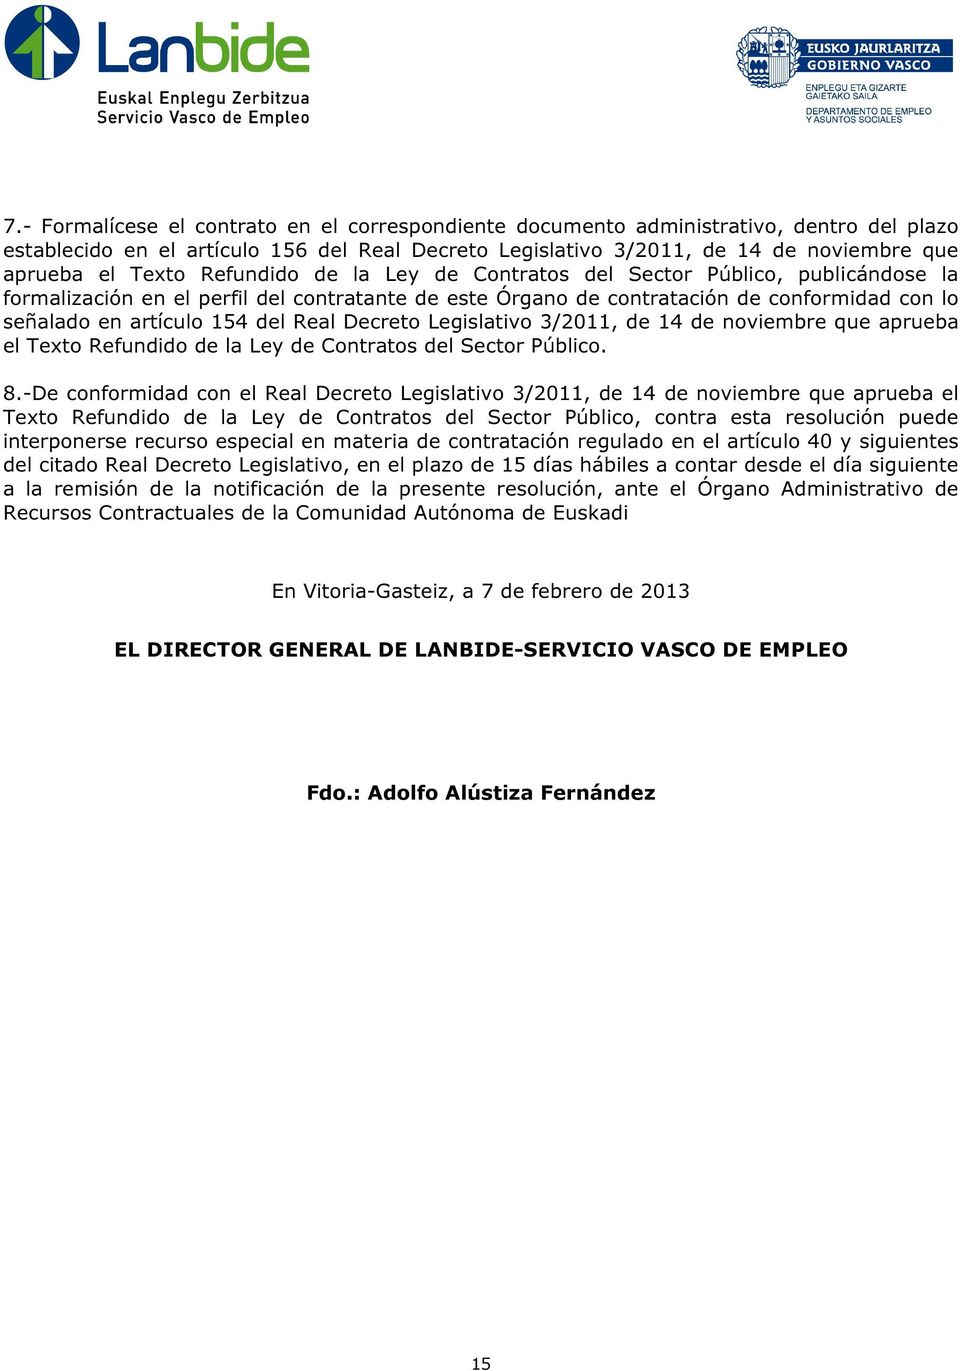 Real Decreto Legislativo 3/2011, de 14 de noviembre que aprueba el Texto Refundido de la Ley de Contratos del Sector Público. 8.